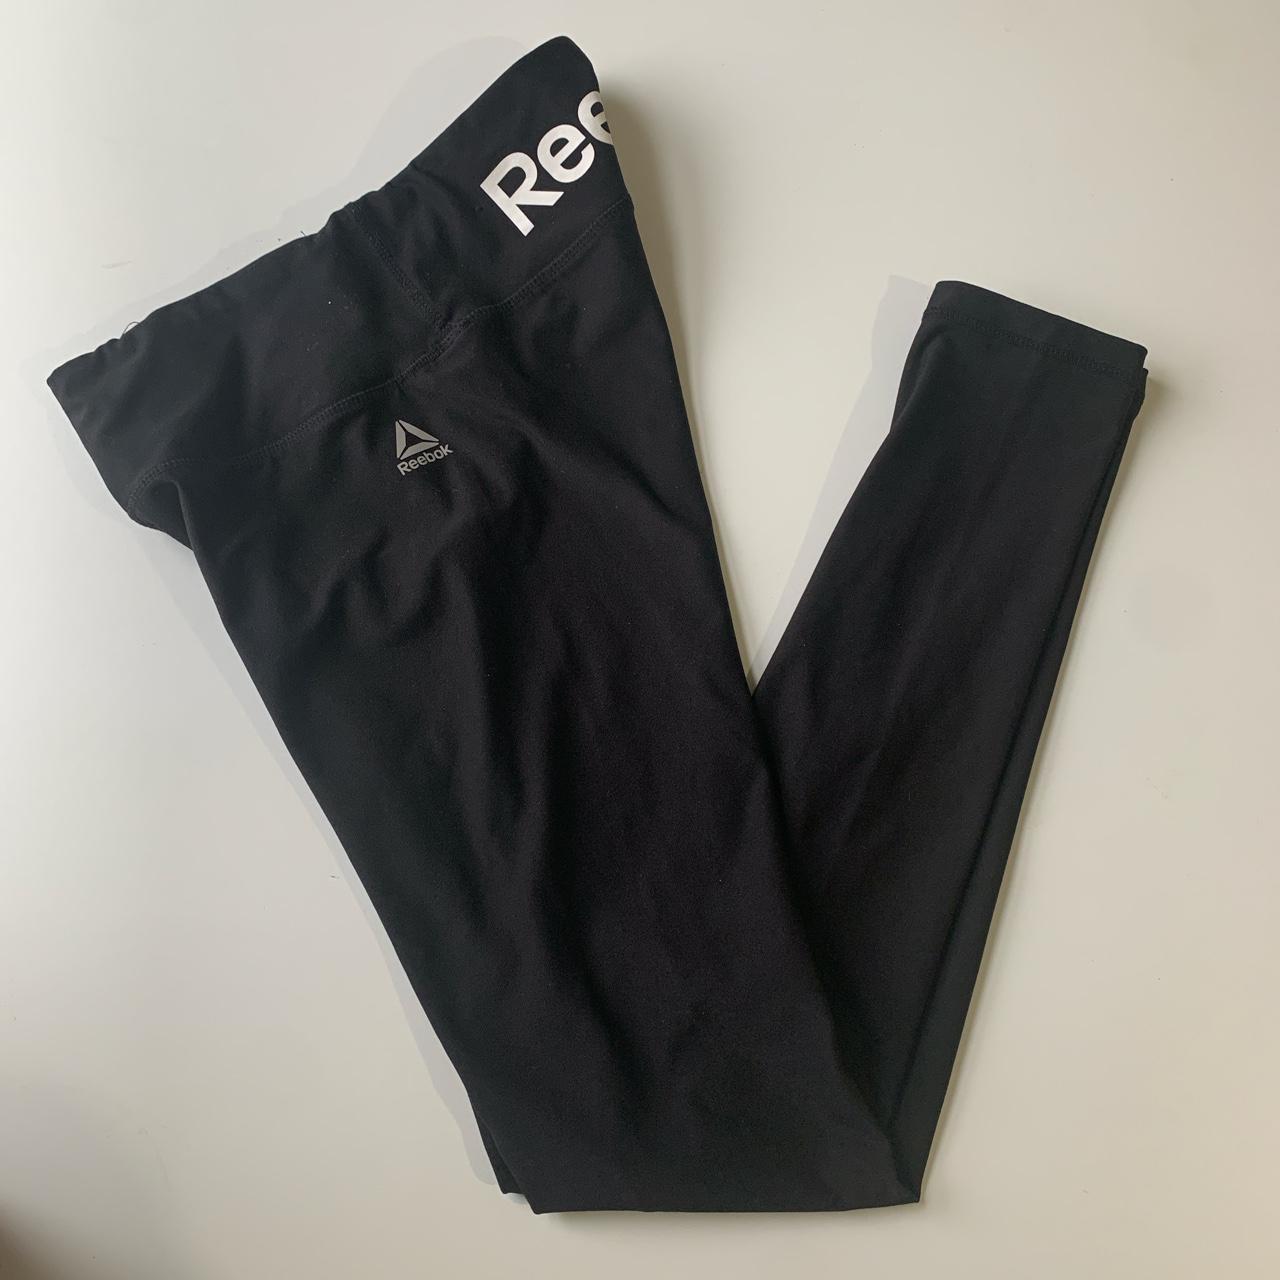 Black reebok leggings Size xs, best fit size - Depop